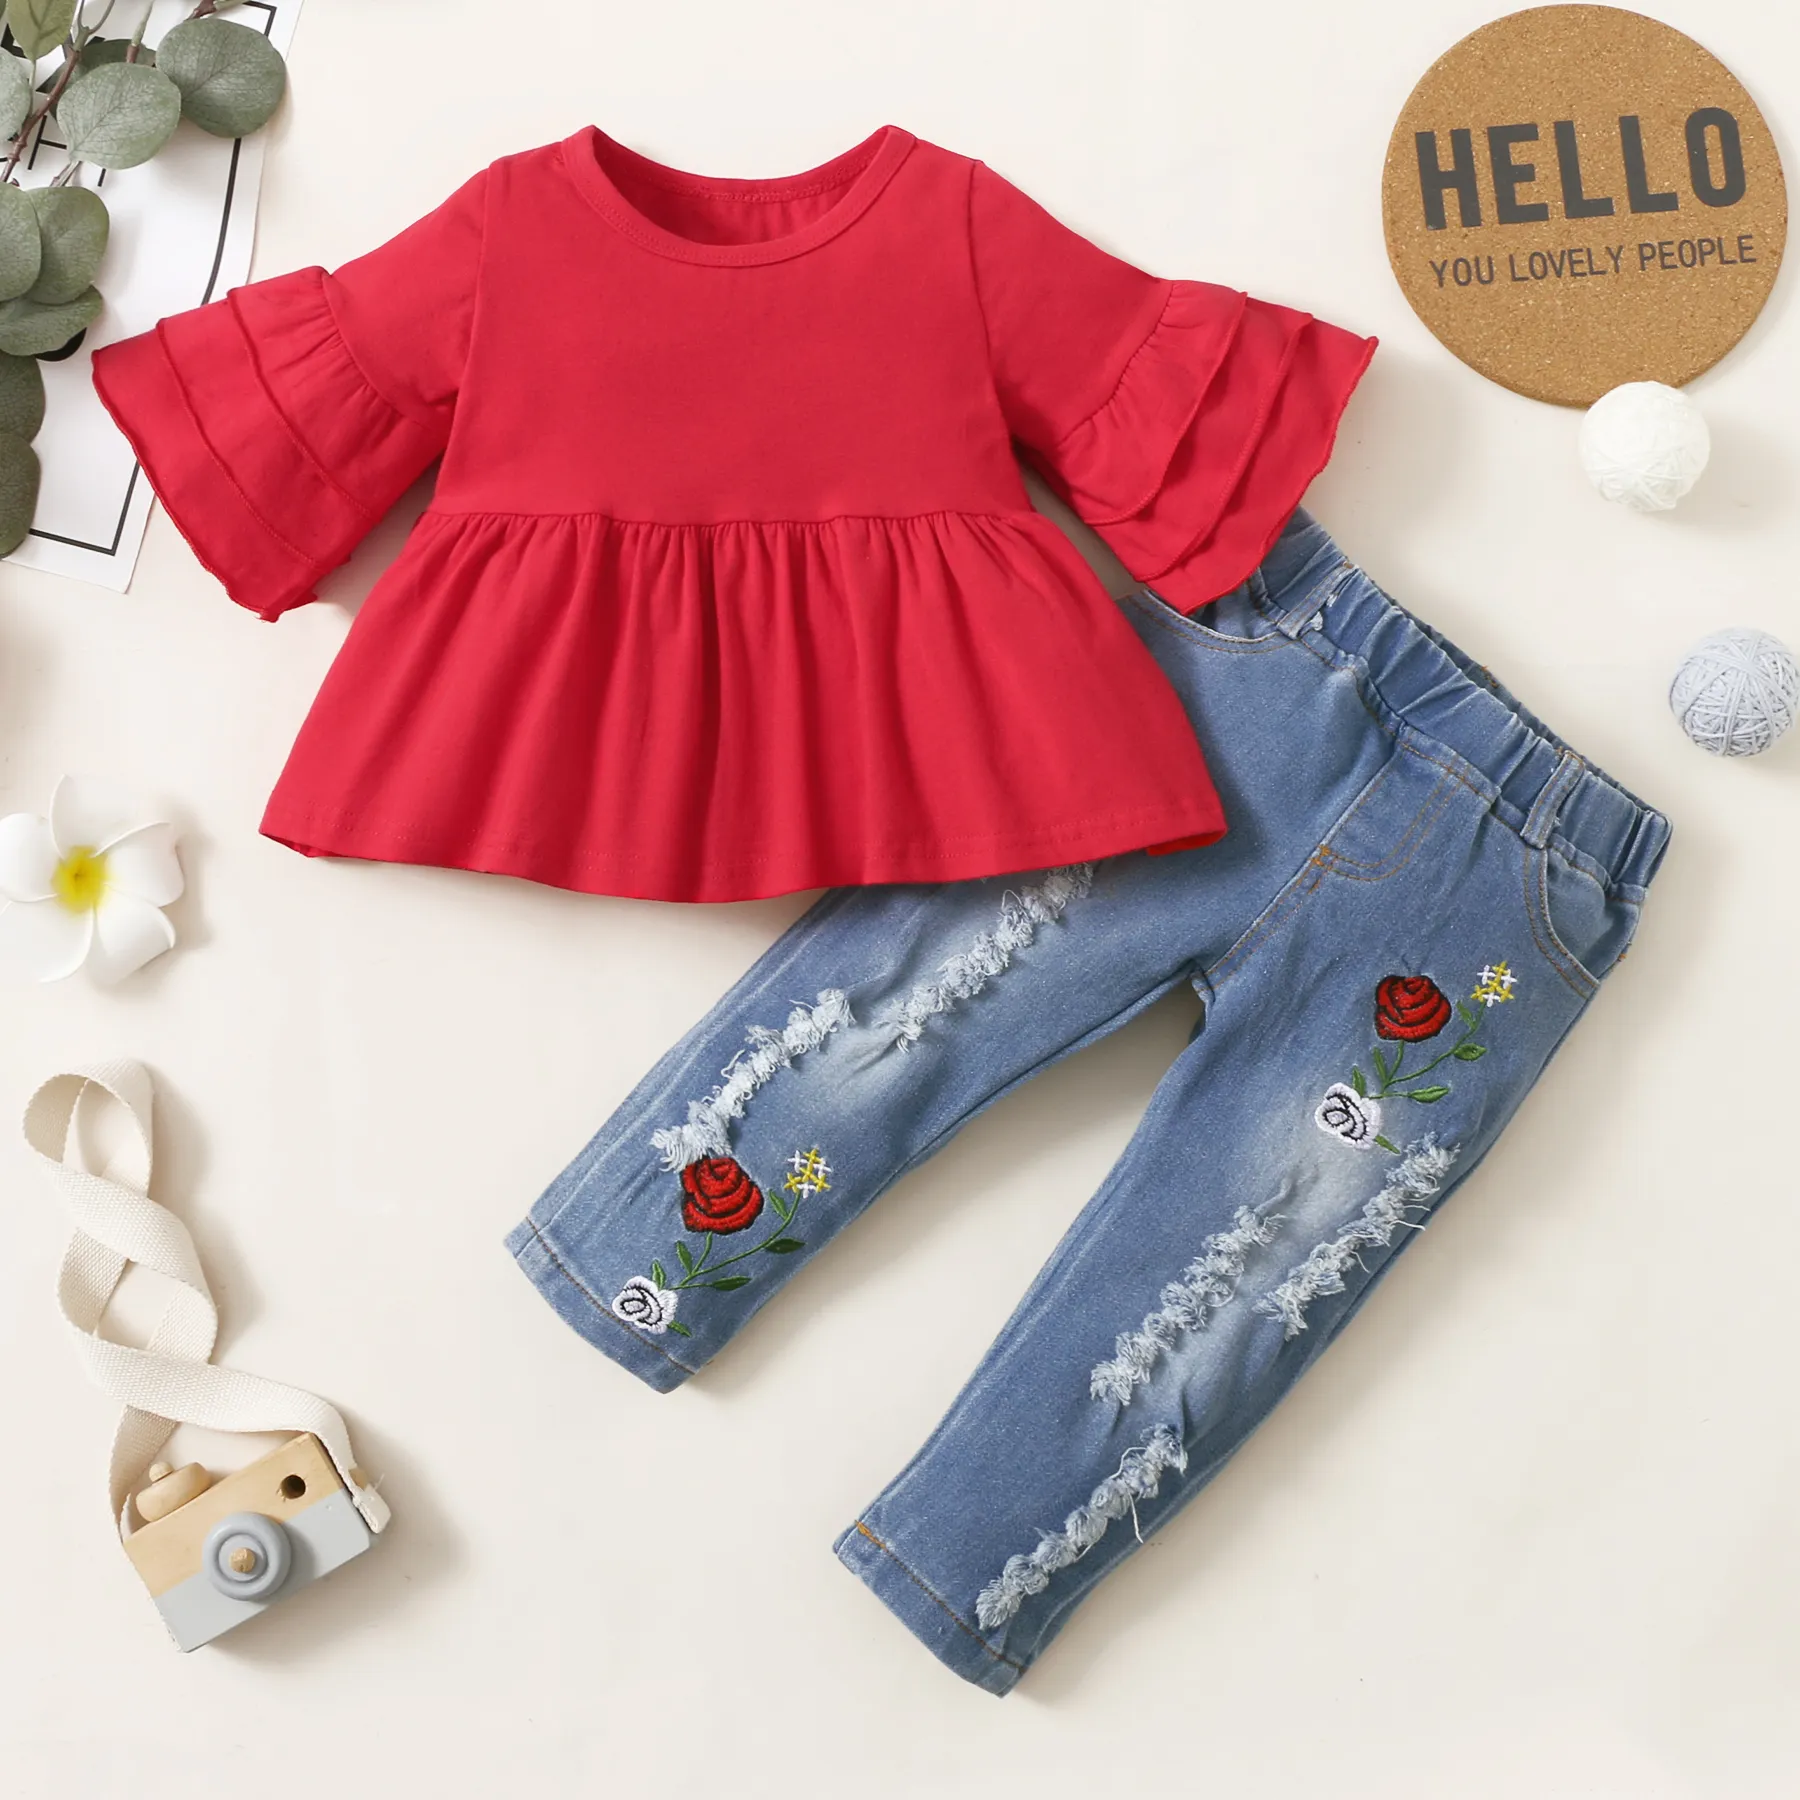 2 件套嬰兒紅色喇叭袖寬鬆上衣和花卉刺繡破洞牛仔褲套裝